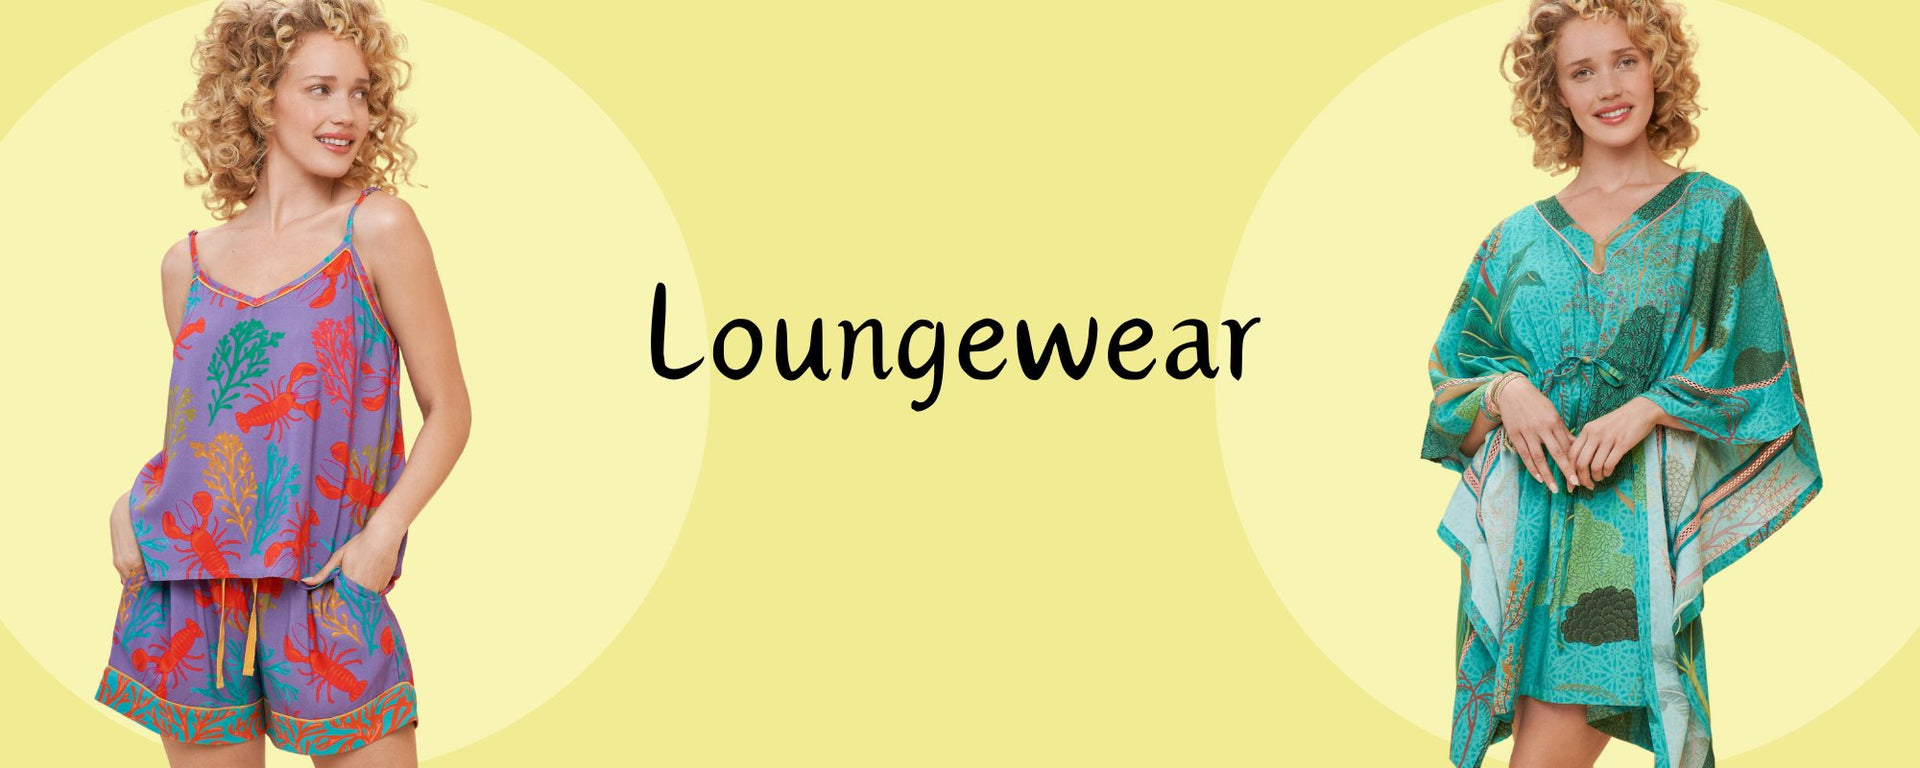 Loungewear - Powder Loungewear - Powder Pyjamas & Powder Kimonos - Relax in Luxury!